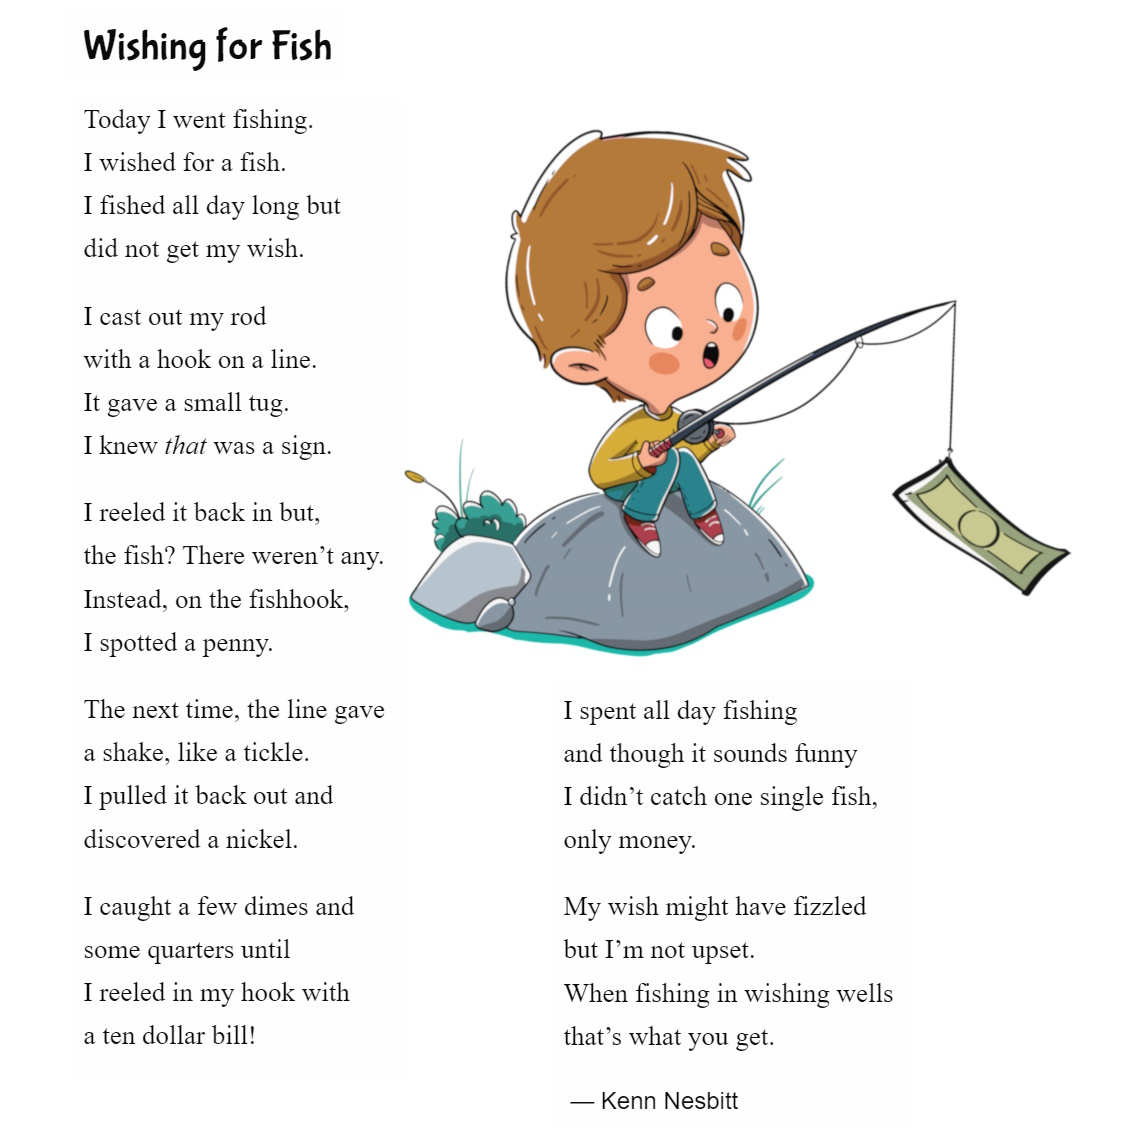 Kenn Nesbitt on X: New funny poems for kids: Wishing for Fish   #fishingpoem #funnypoem #childrenspoetry  #poetry4kids  / X